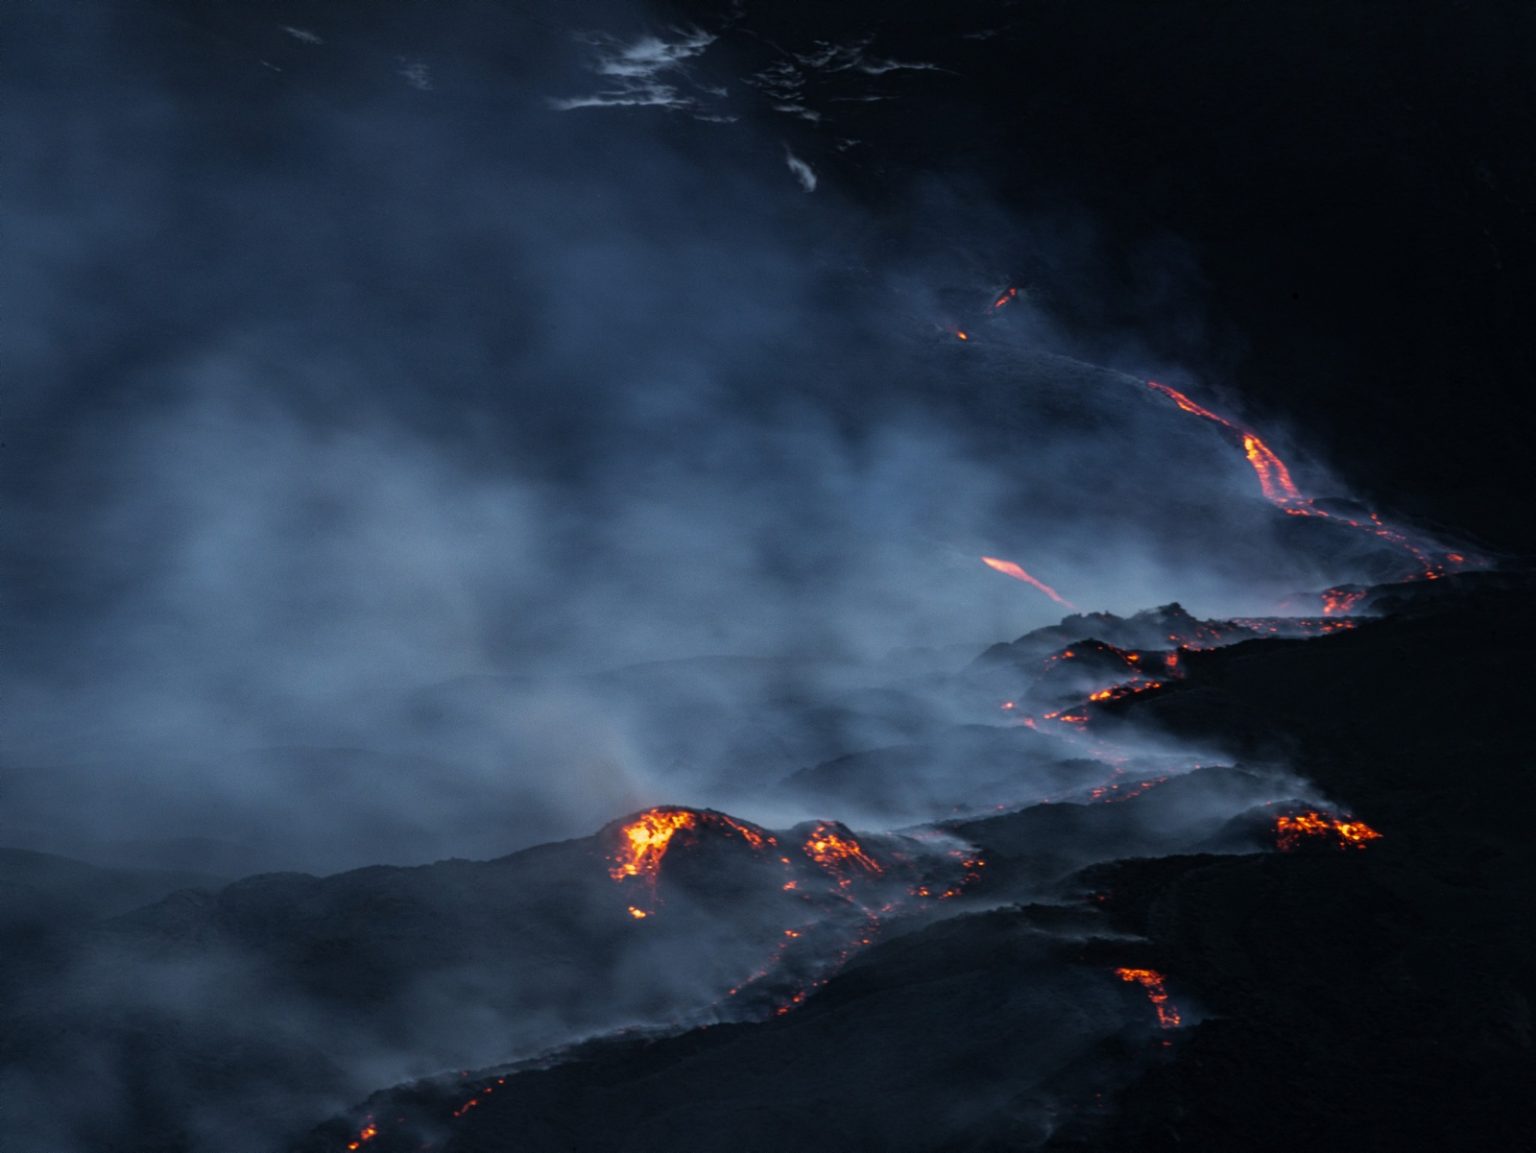 Mount Etna, Sicily, June 2022 - Valle del Bove: eruption of the volcano ><
Etna, Sicilia, giugno 2022 - Valle del Bove, eruzione del vulcano.